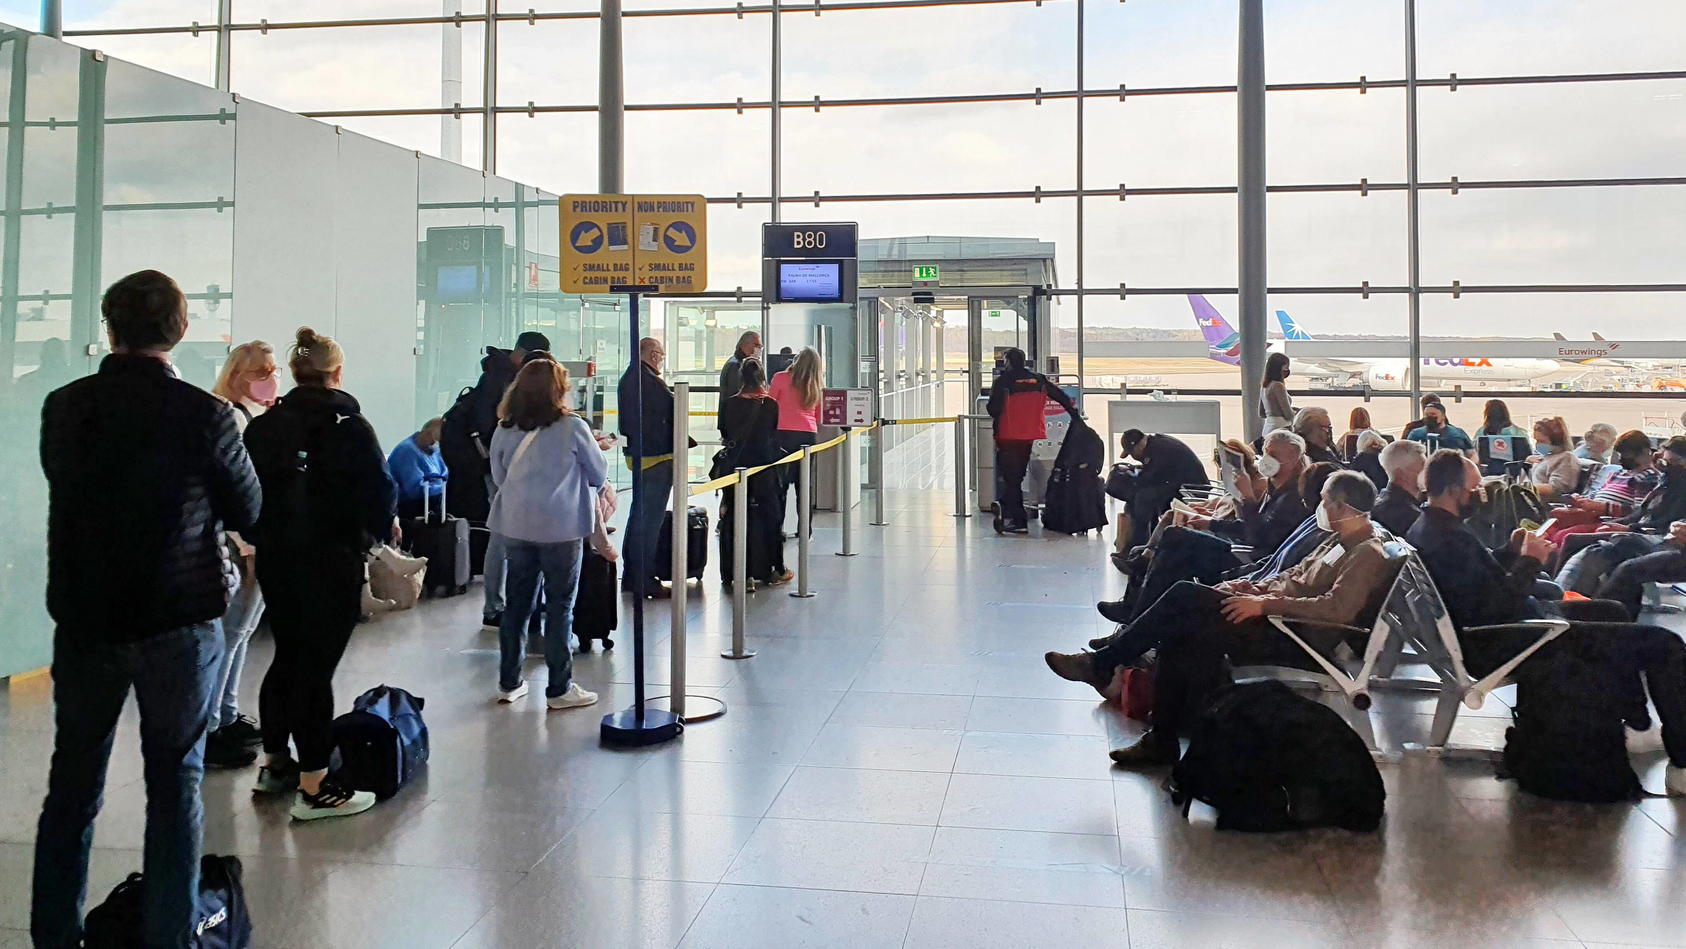 Wahnsinn! Wer auf seinen Flug verzichtet, bekommt von Delta Airlines fast 10.000 Euro. So ist es bei einem USA-Inlandsflug passiert. Das Symbolfoto zeigt wartende Gäste am Flughafen Köln /Bonn.